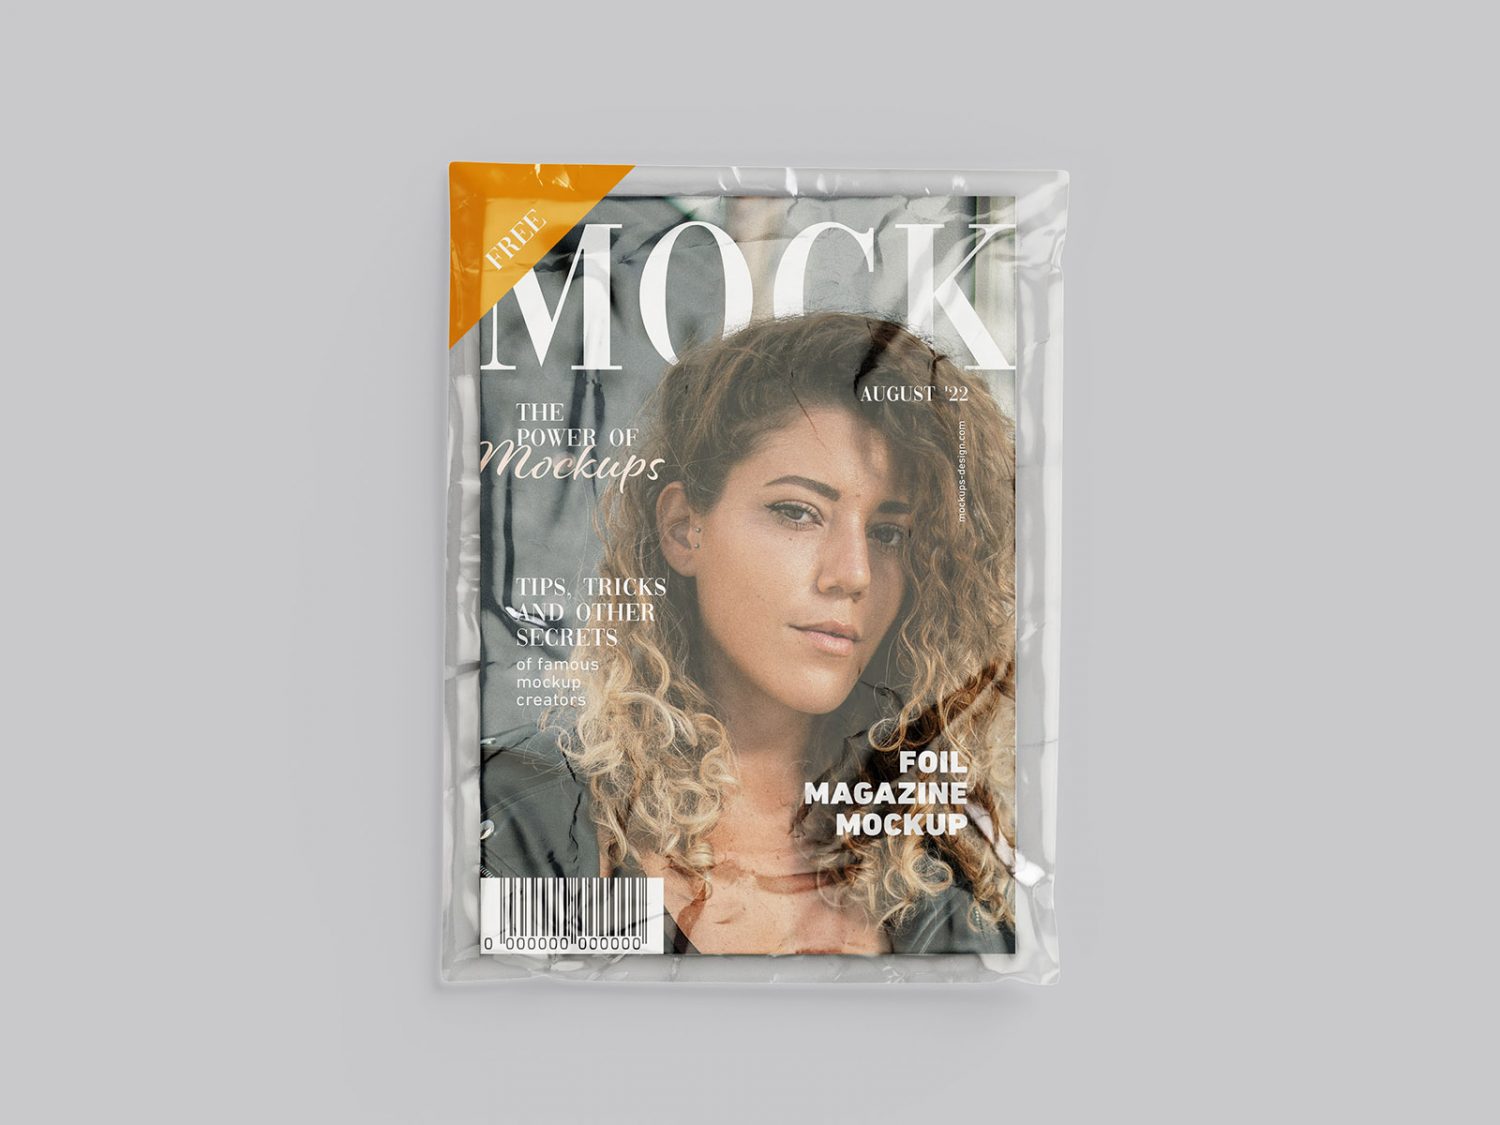 Free Magazine in Foil mockup